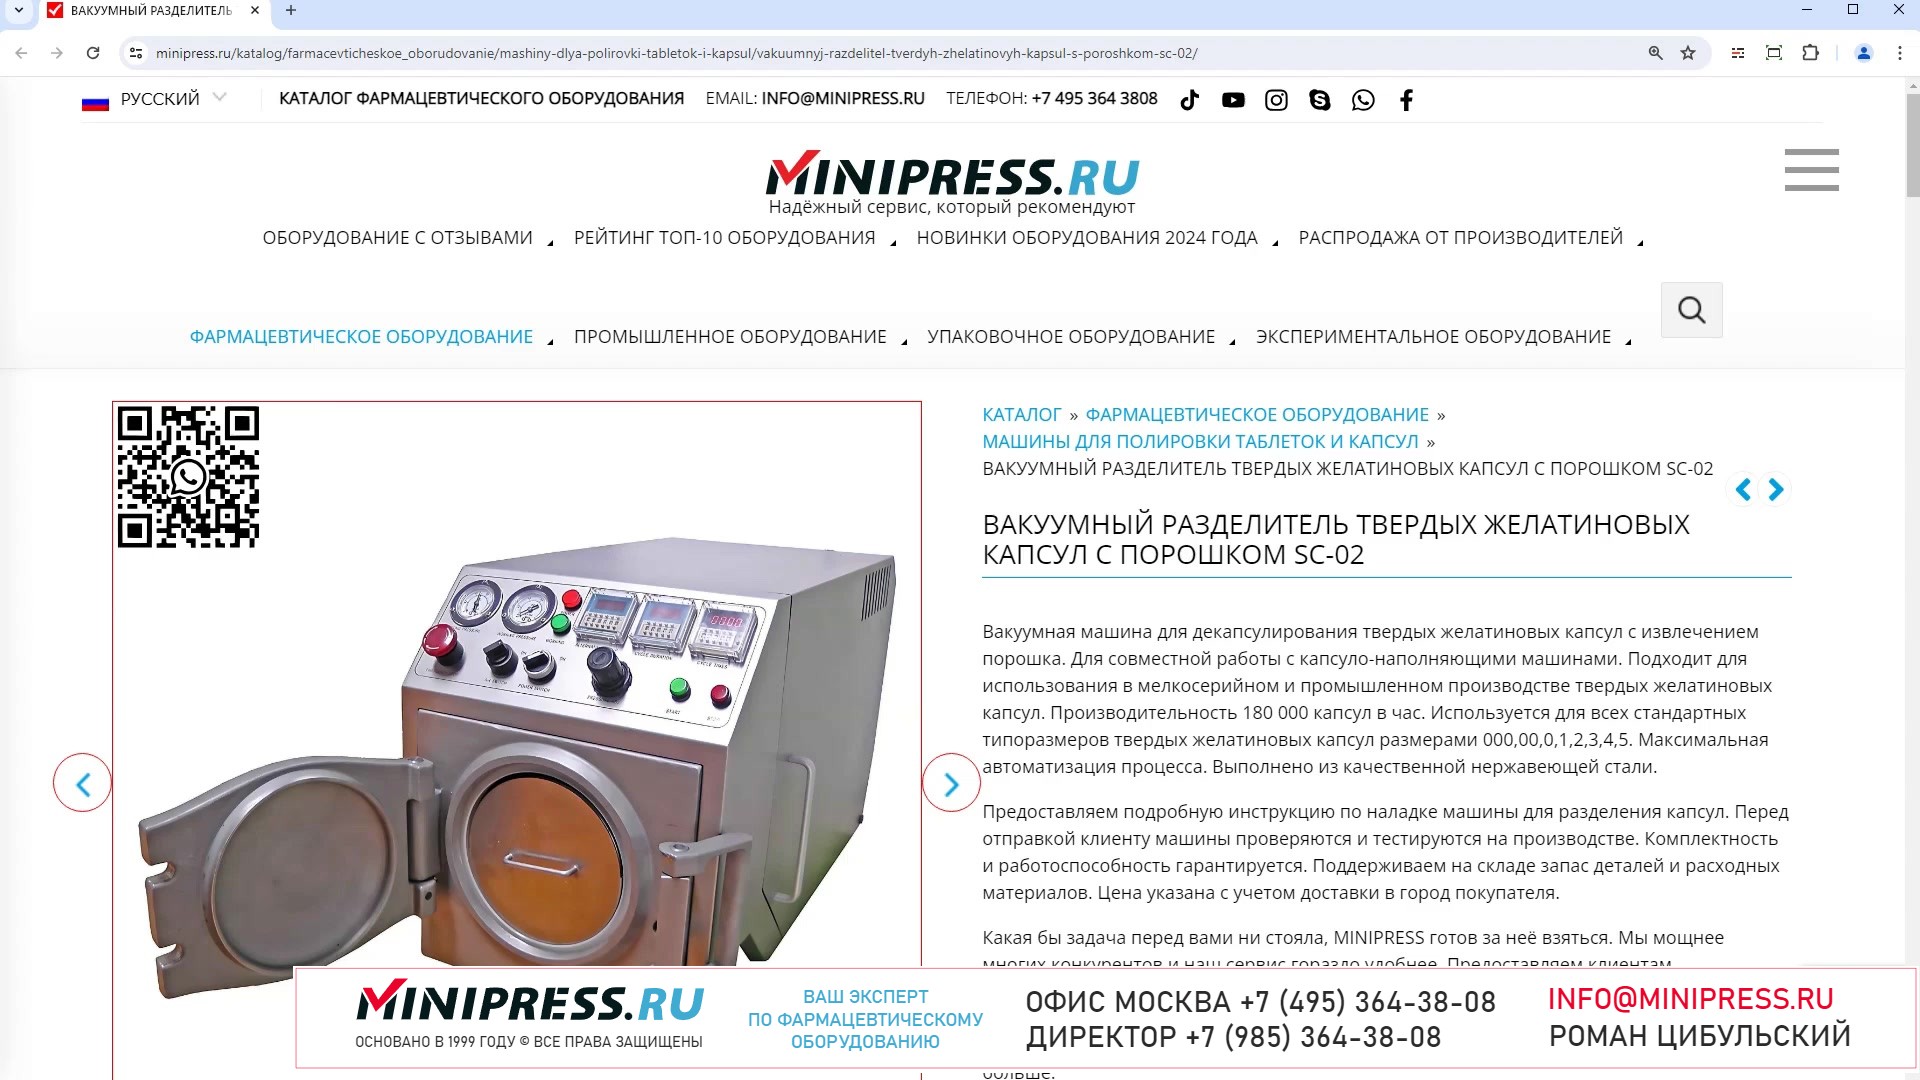 Minipress.ru Вакуумный разделитель твердых желатиновых капсул с порошком SC-02